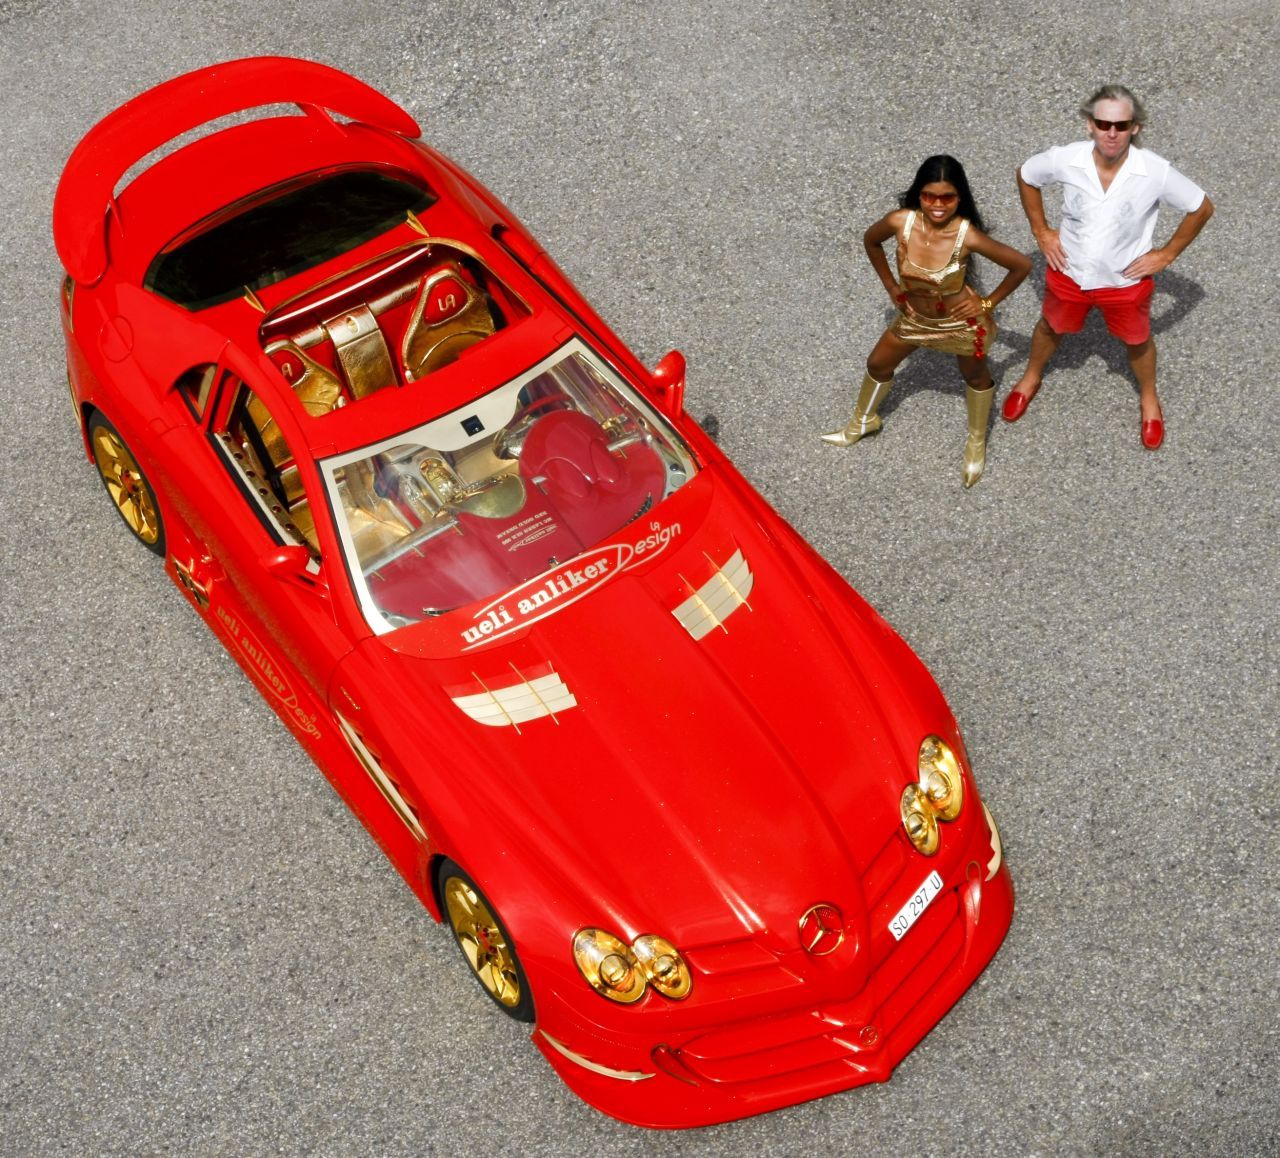 SLR 999 Red Gold Dream costa 8 milioane de euro! E cineva interesat?